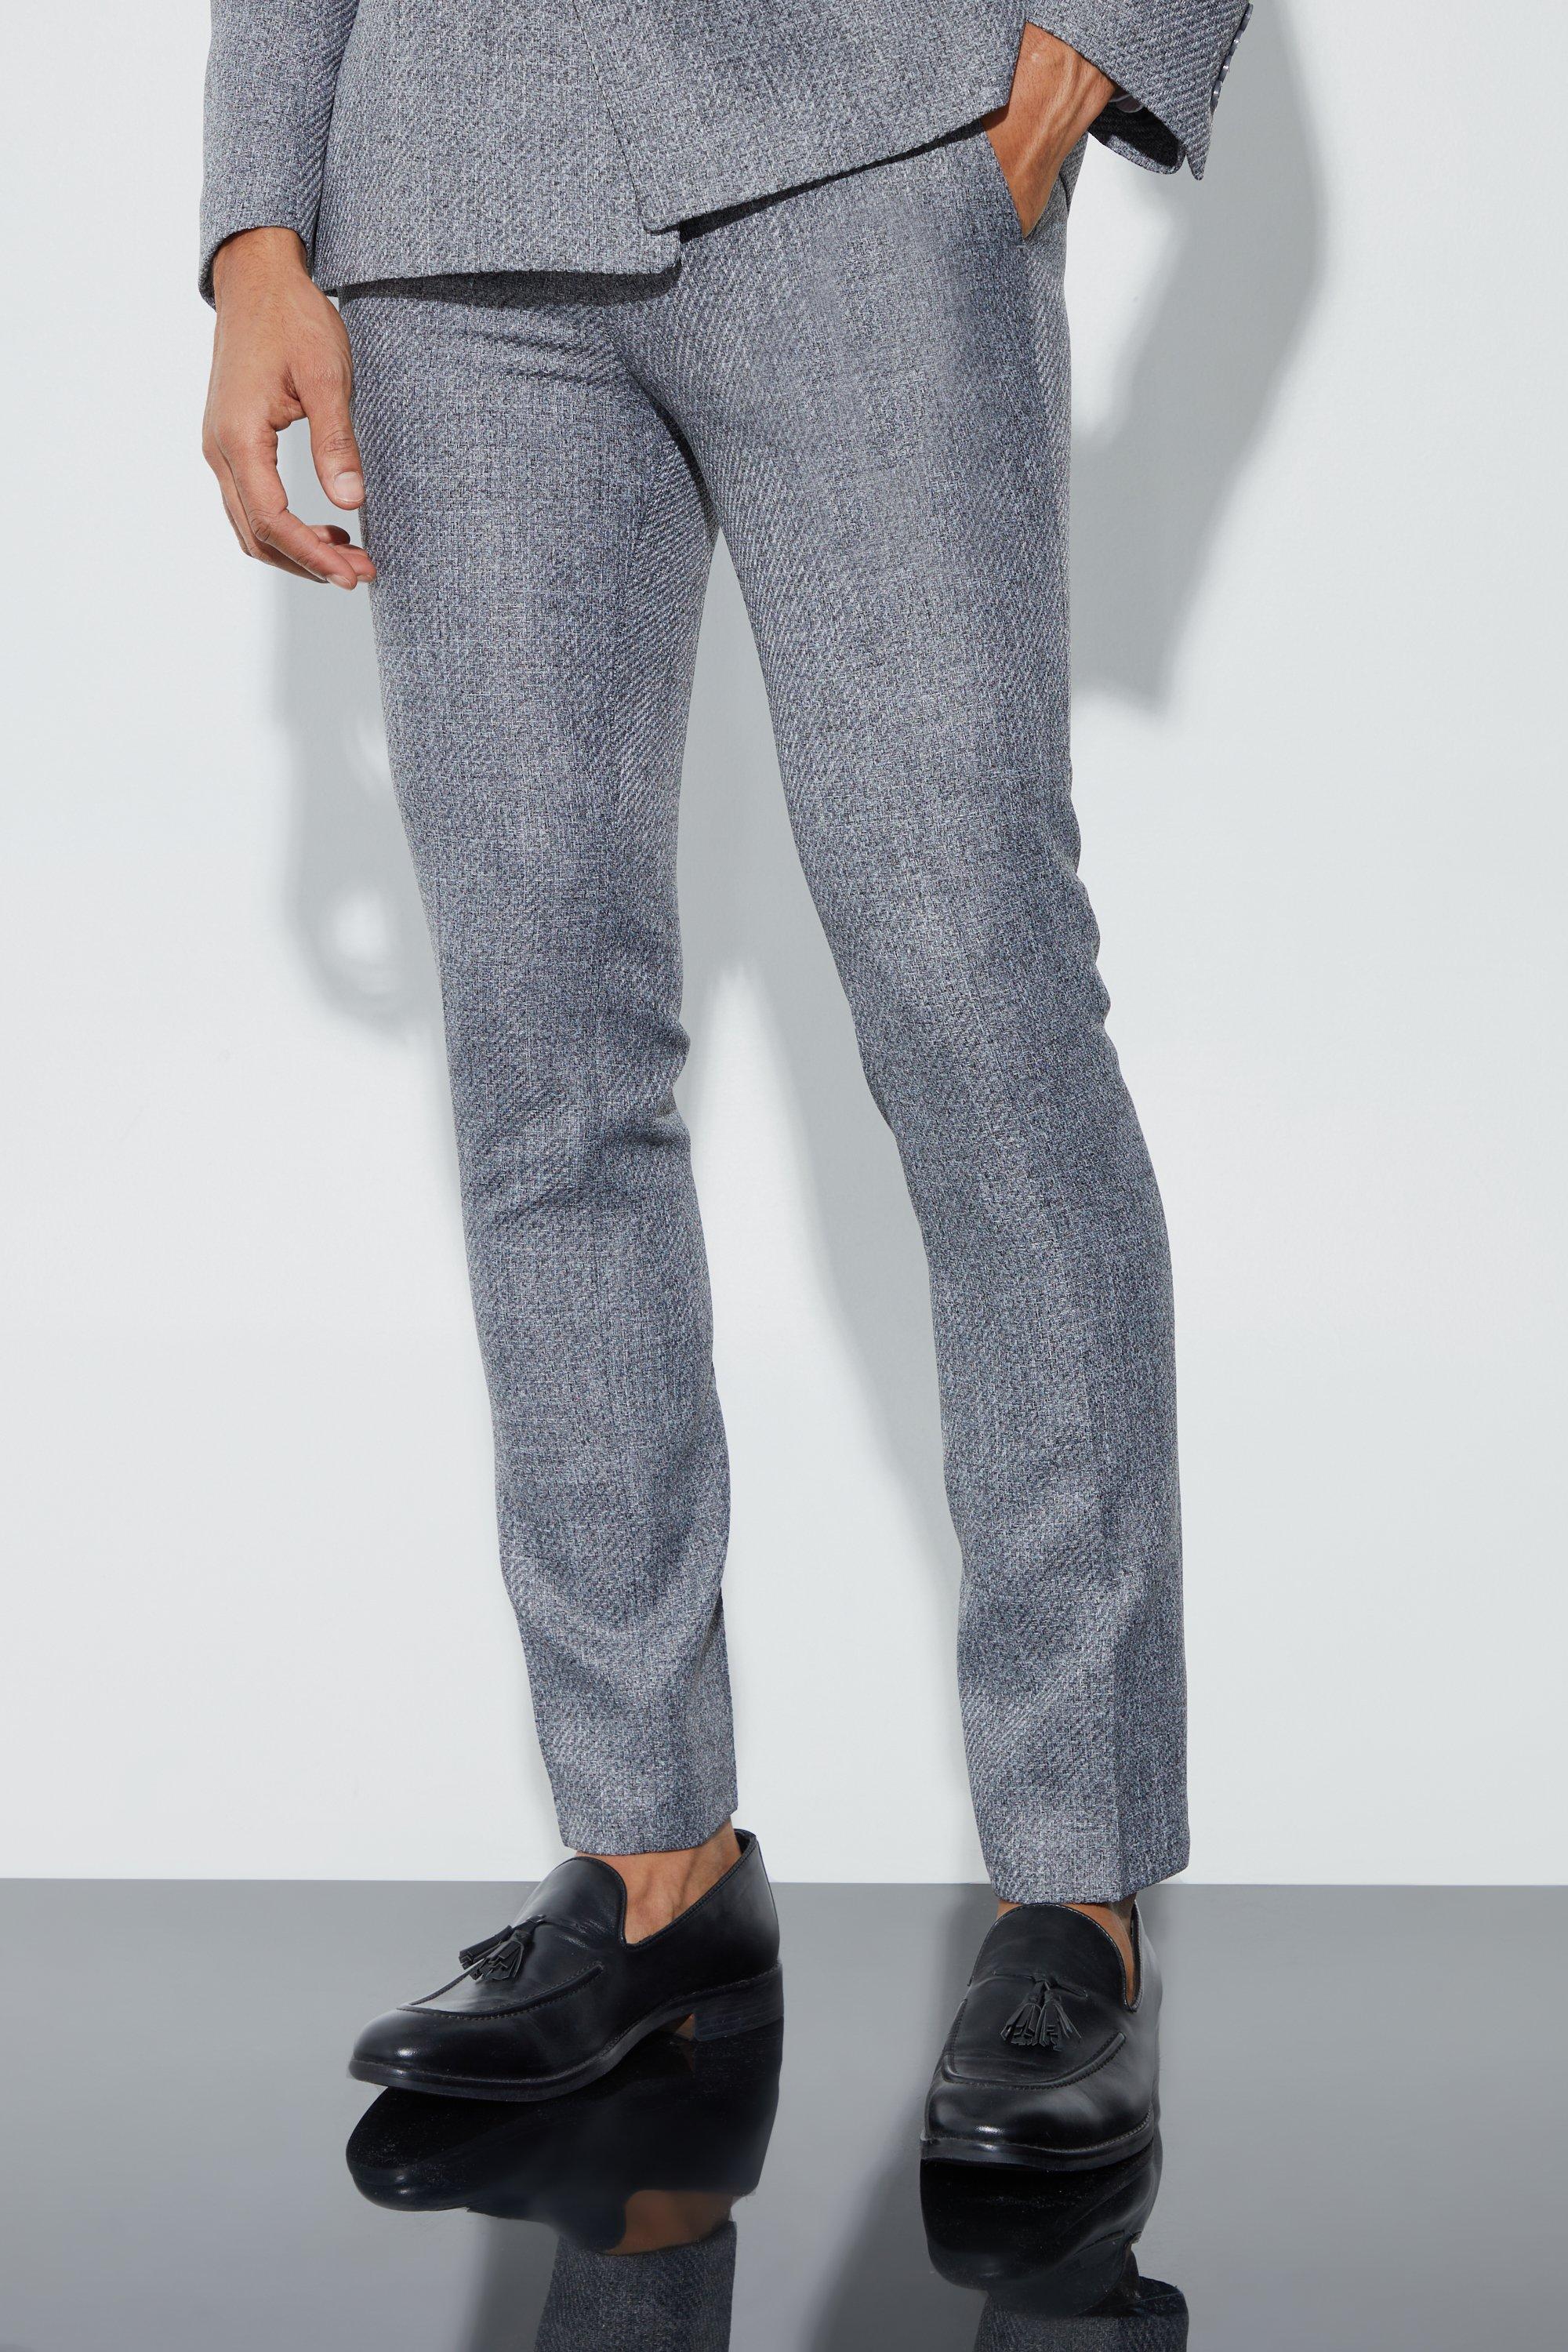 pantalon de costume skinny homme - gris - 36, gris